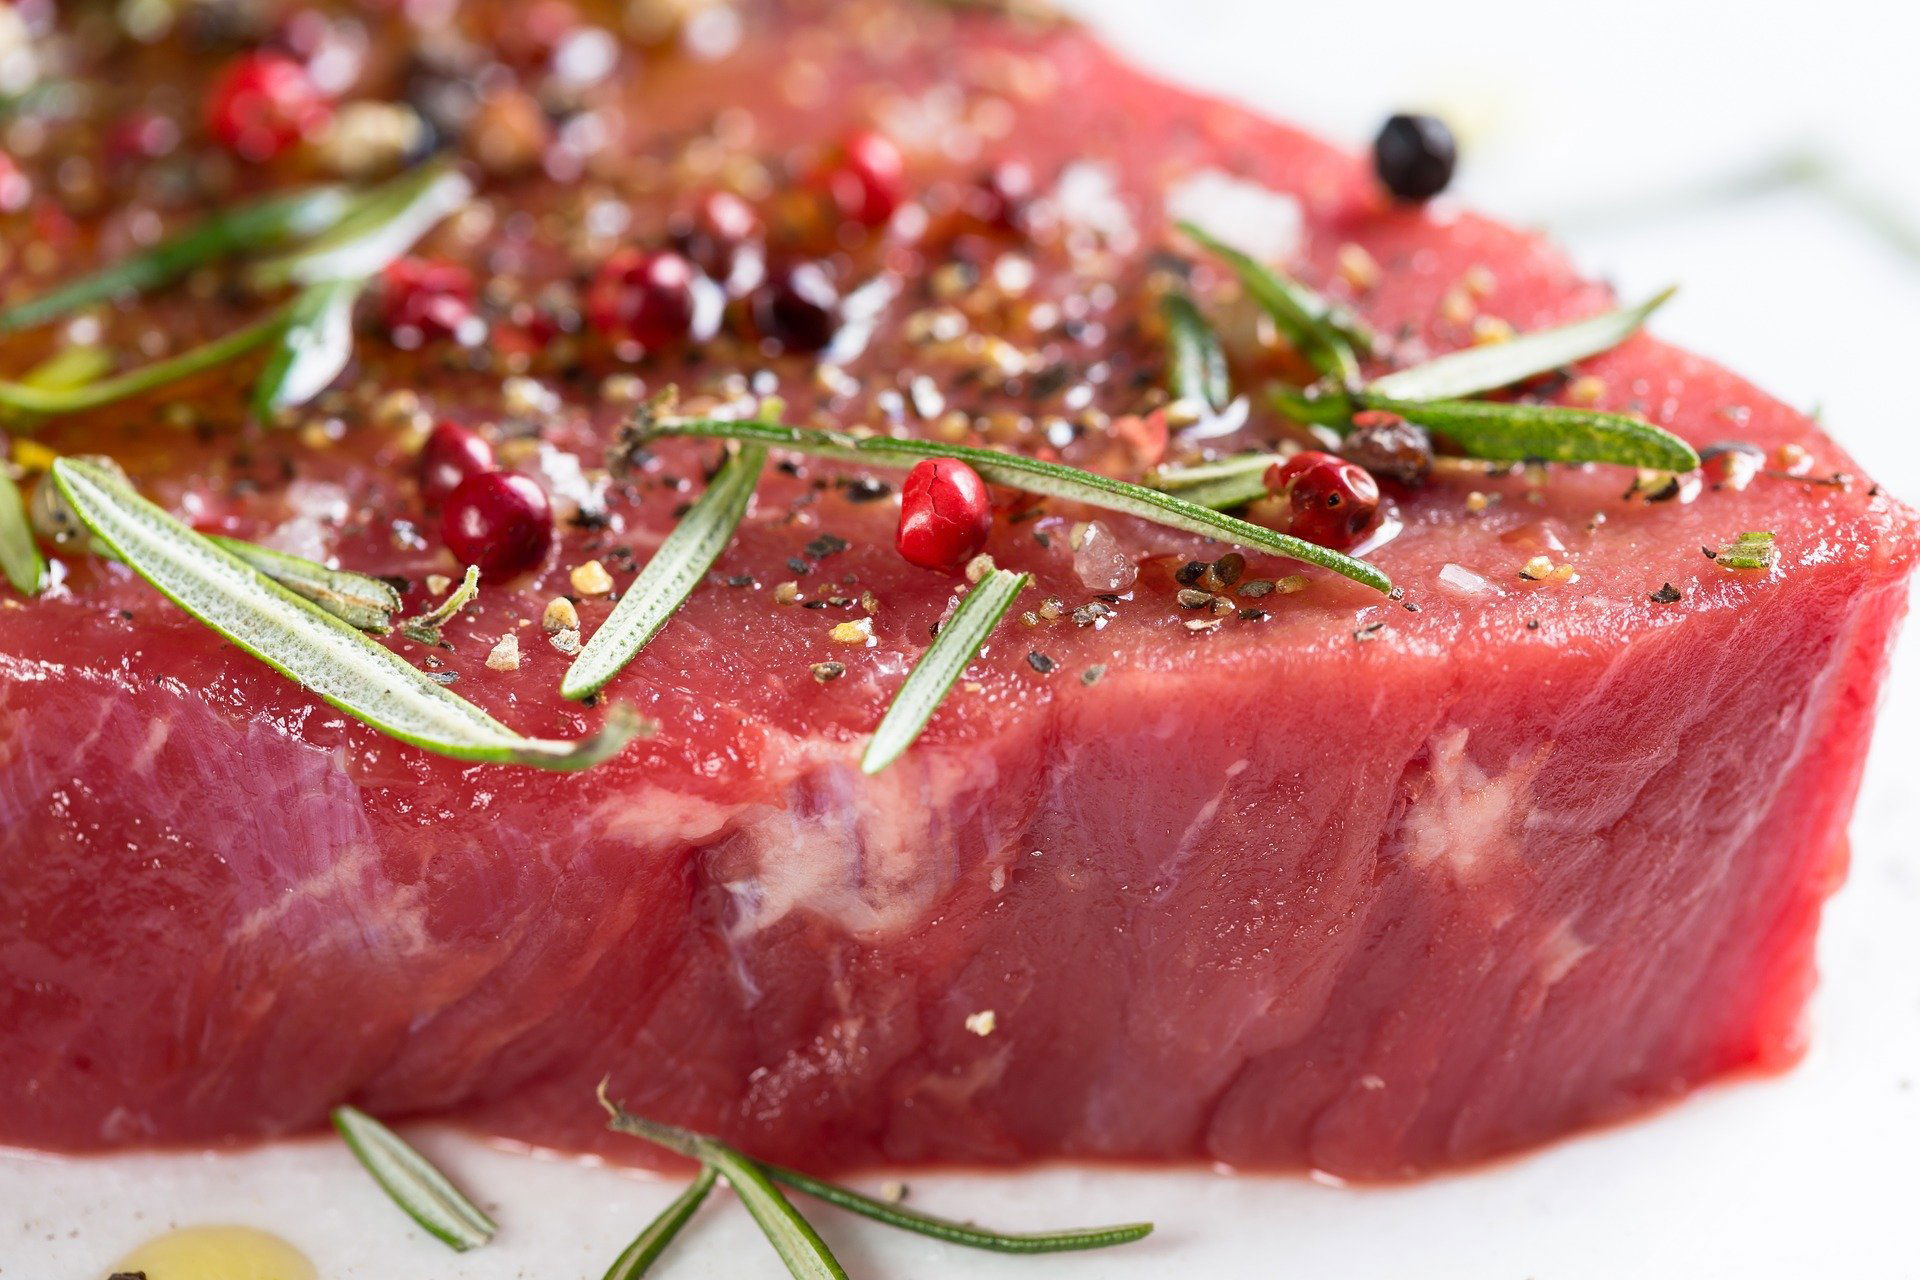 ما هى العلاقة بين اللحوم الحمراء والاورام الخبيثة ؟